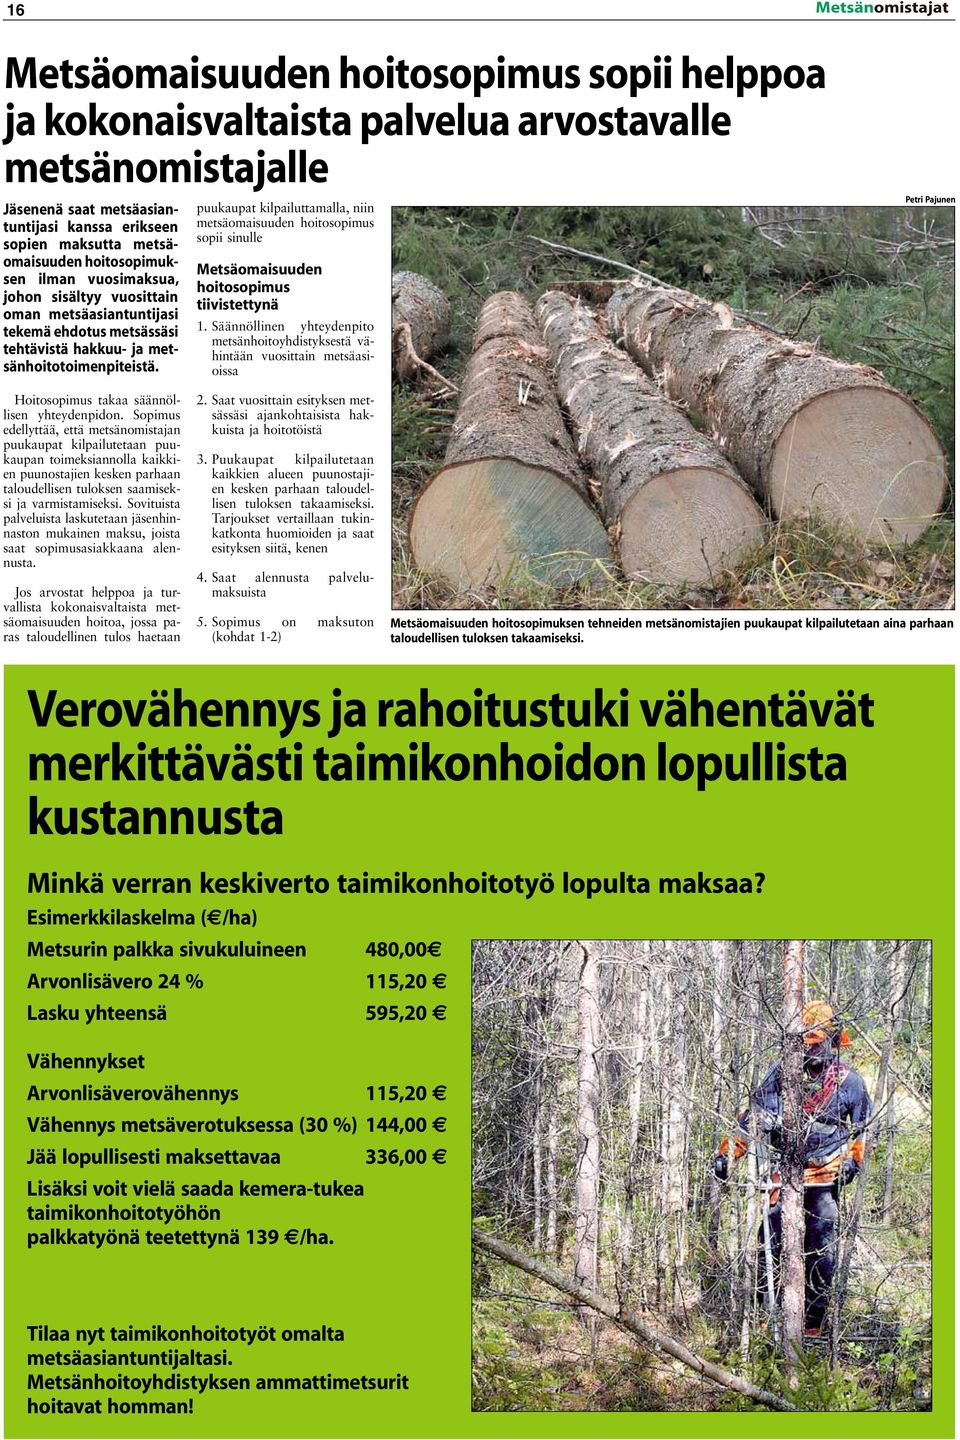 puukaupat kilpailuttamalla, niin metsäomaisuuden hoitosopimus sopii sinulle Metsäomaisuuden hoitosopimus tiivistettynä 1.